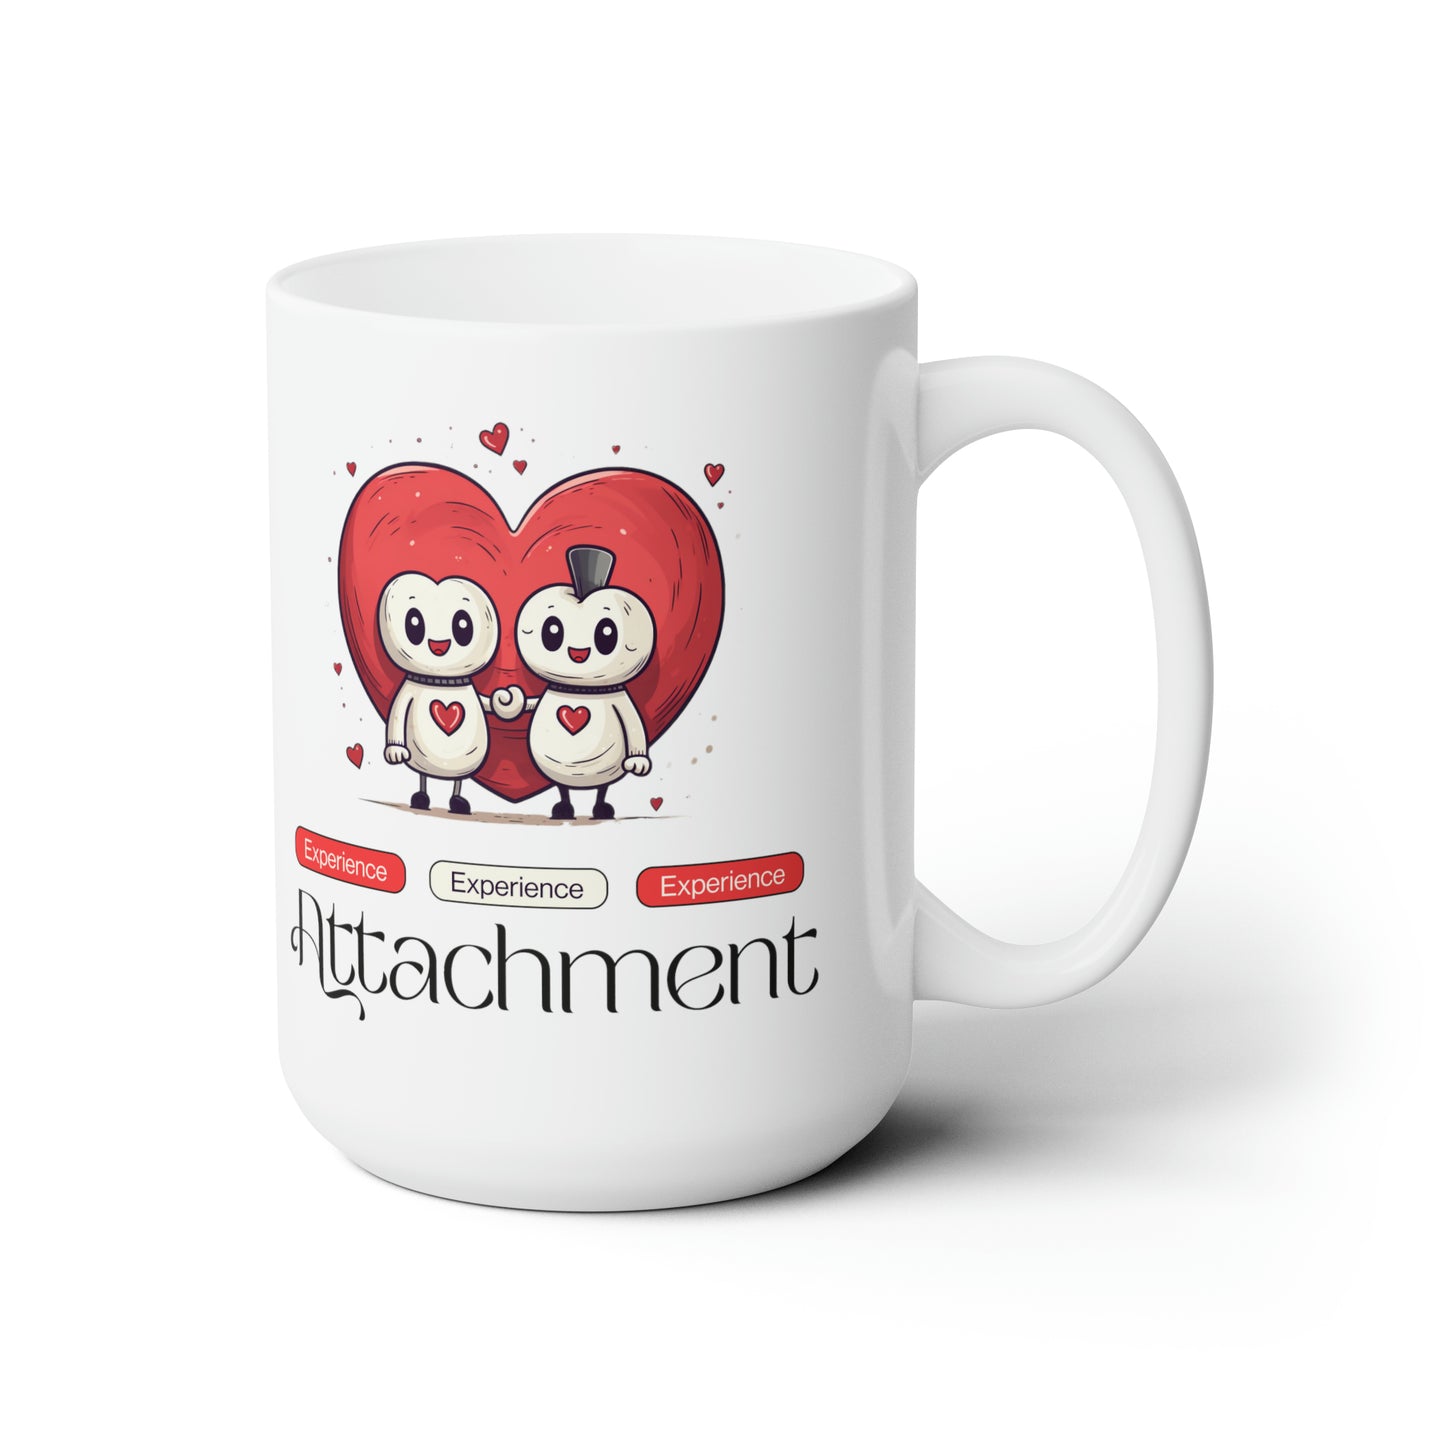 Attachment Mug, 15oz